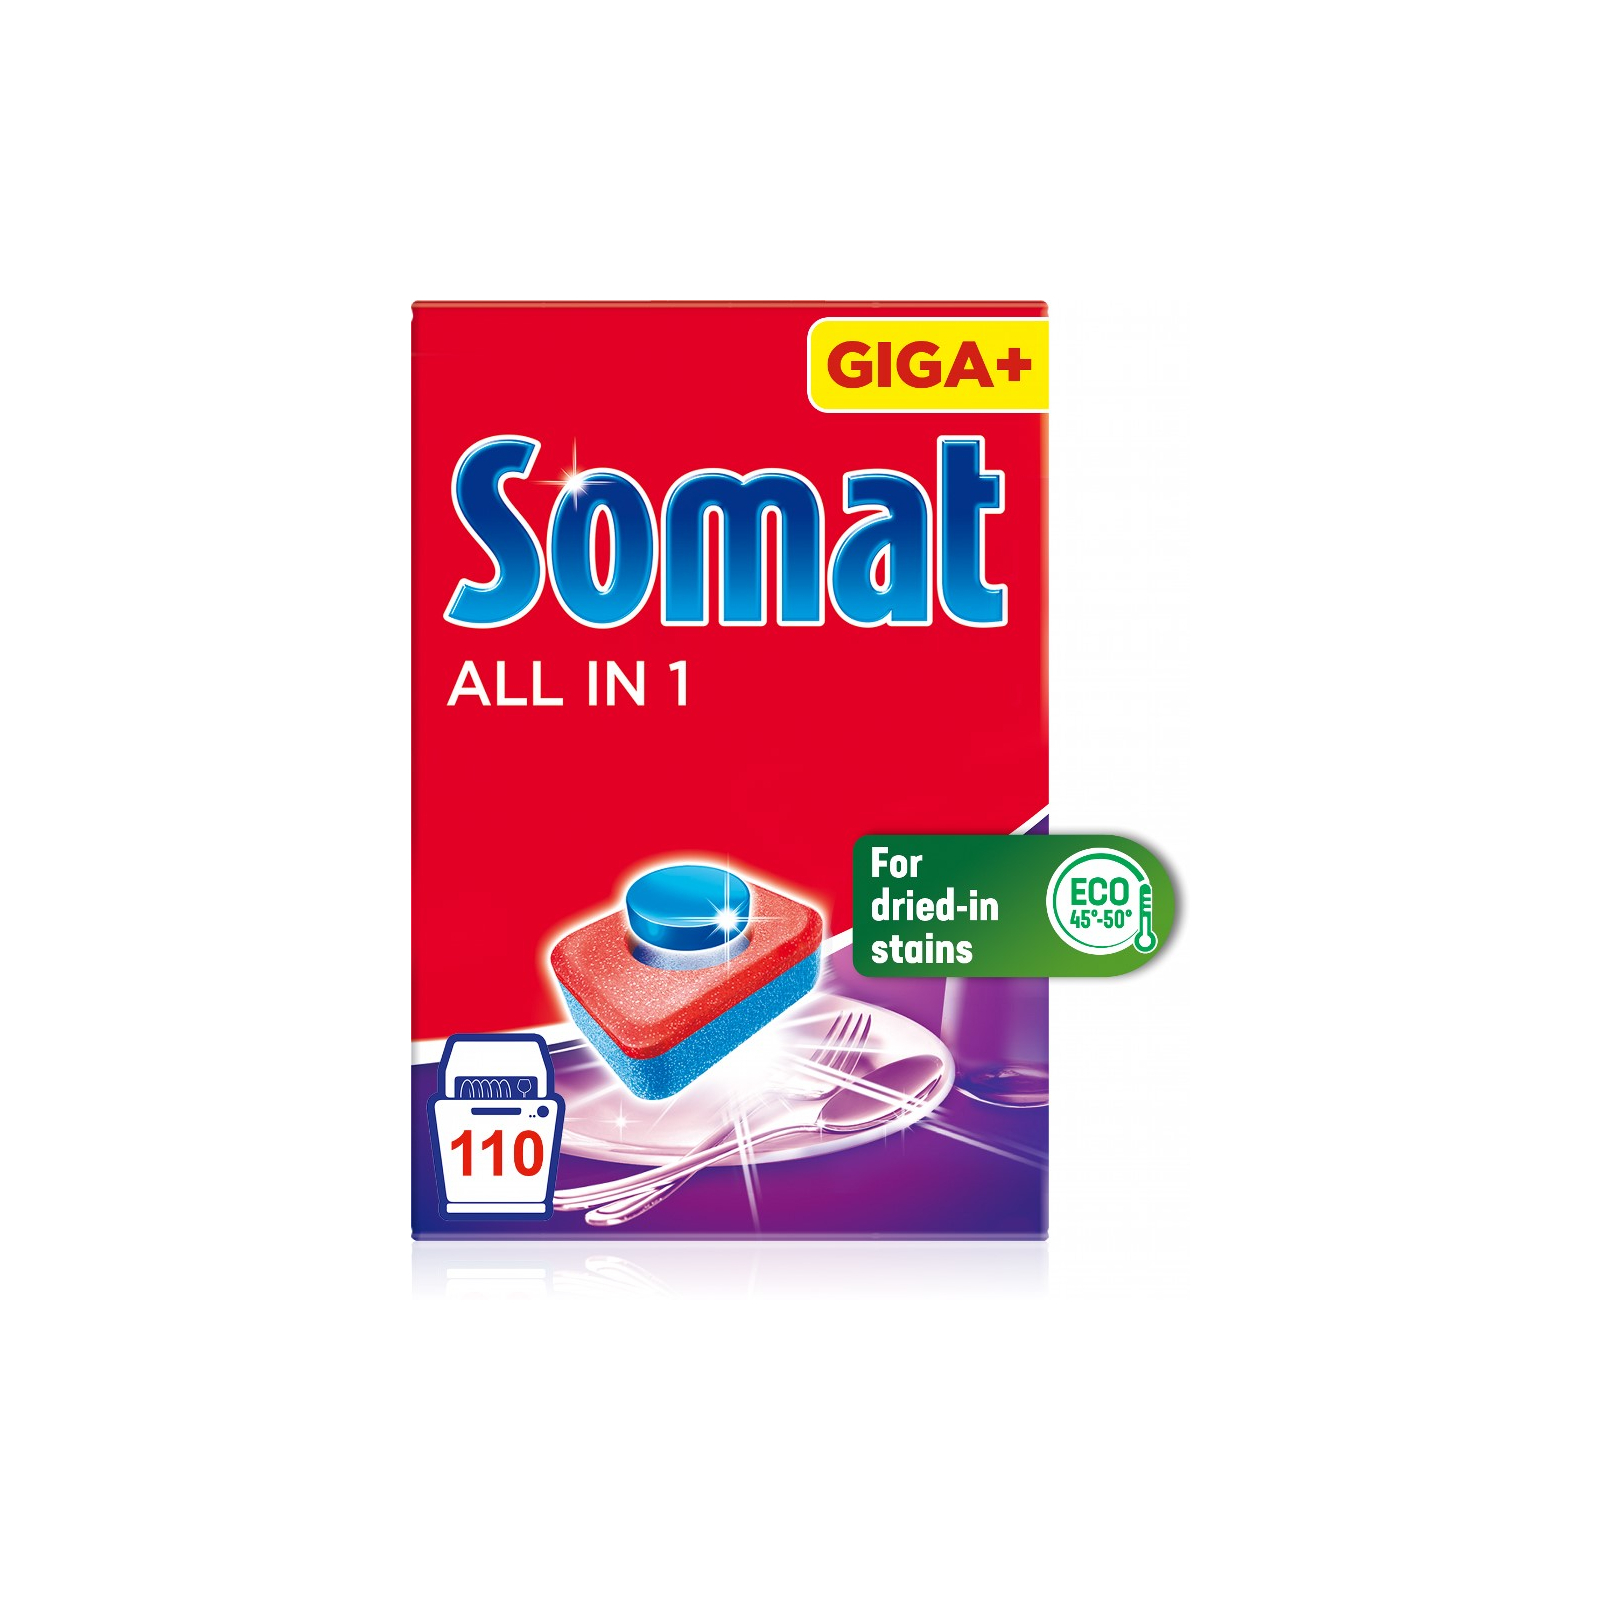 Таблетки для посудомоечных машин Somat All in 1 90 шт. (9000101534993) изображение 3